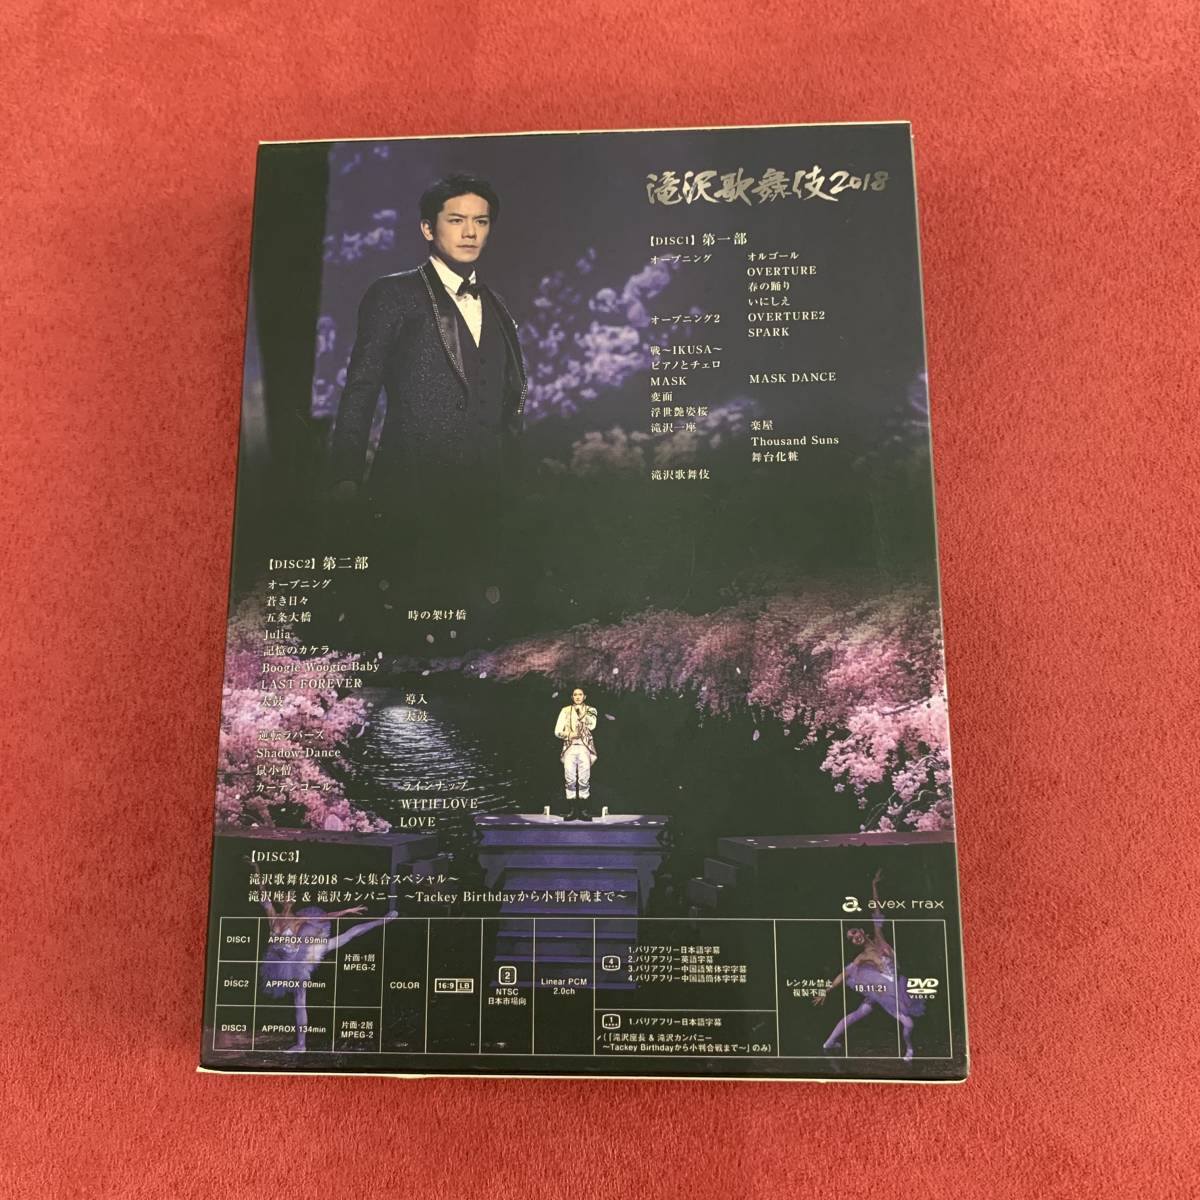 滝沢歌舞伎2018 初回盤B DVD 3枚組 滝沢秀明/三宅健(演劇 